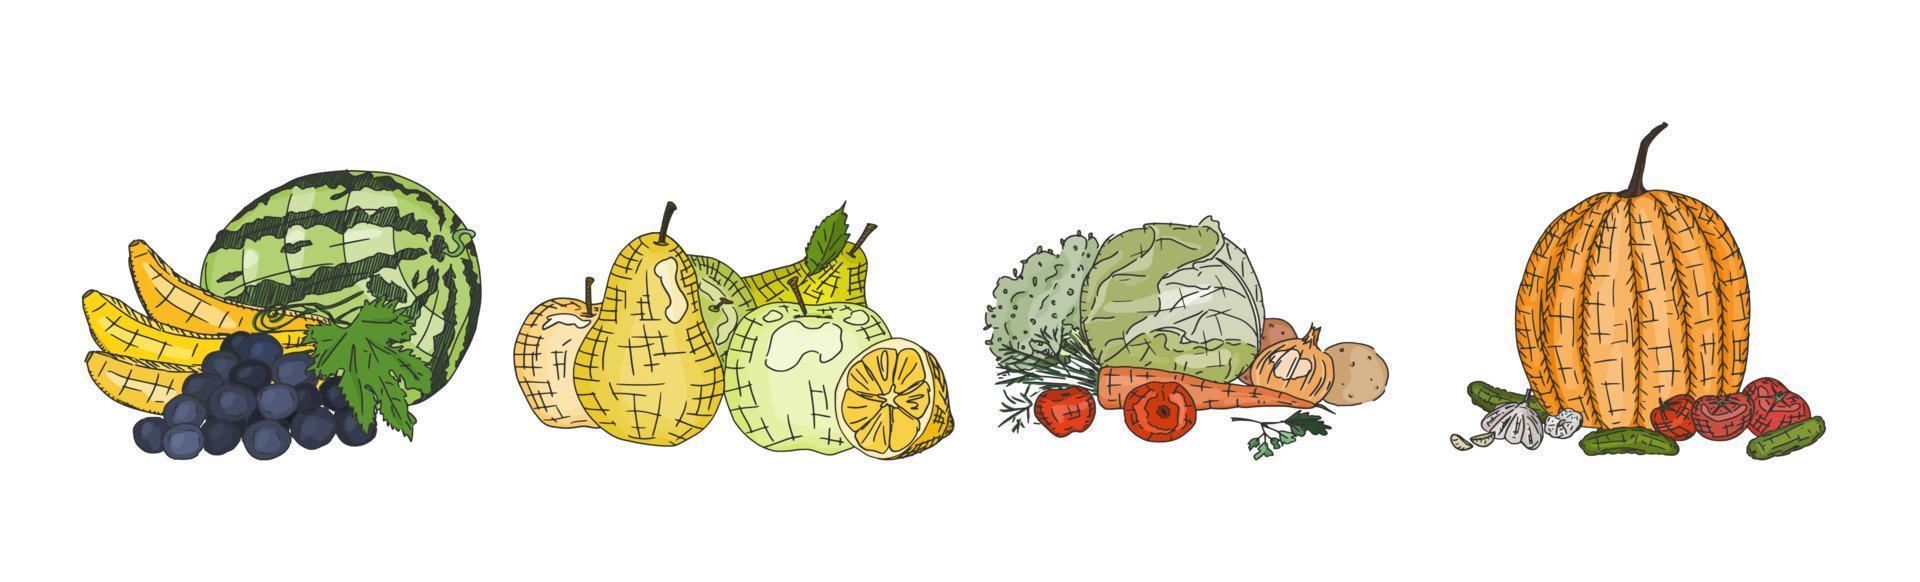 Verduras y frutas deliciosas vegetarianas naturales. vector